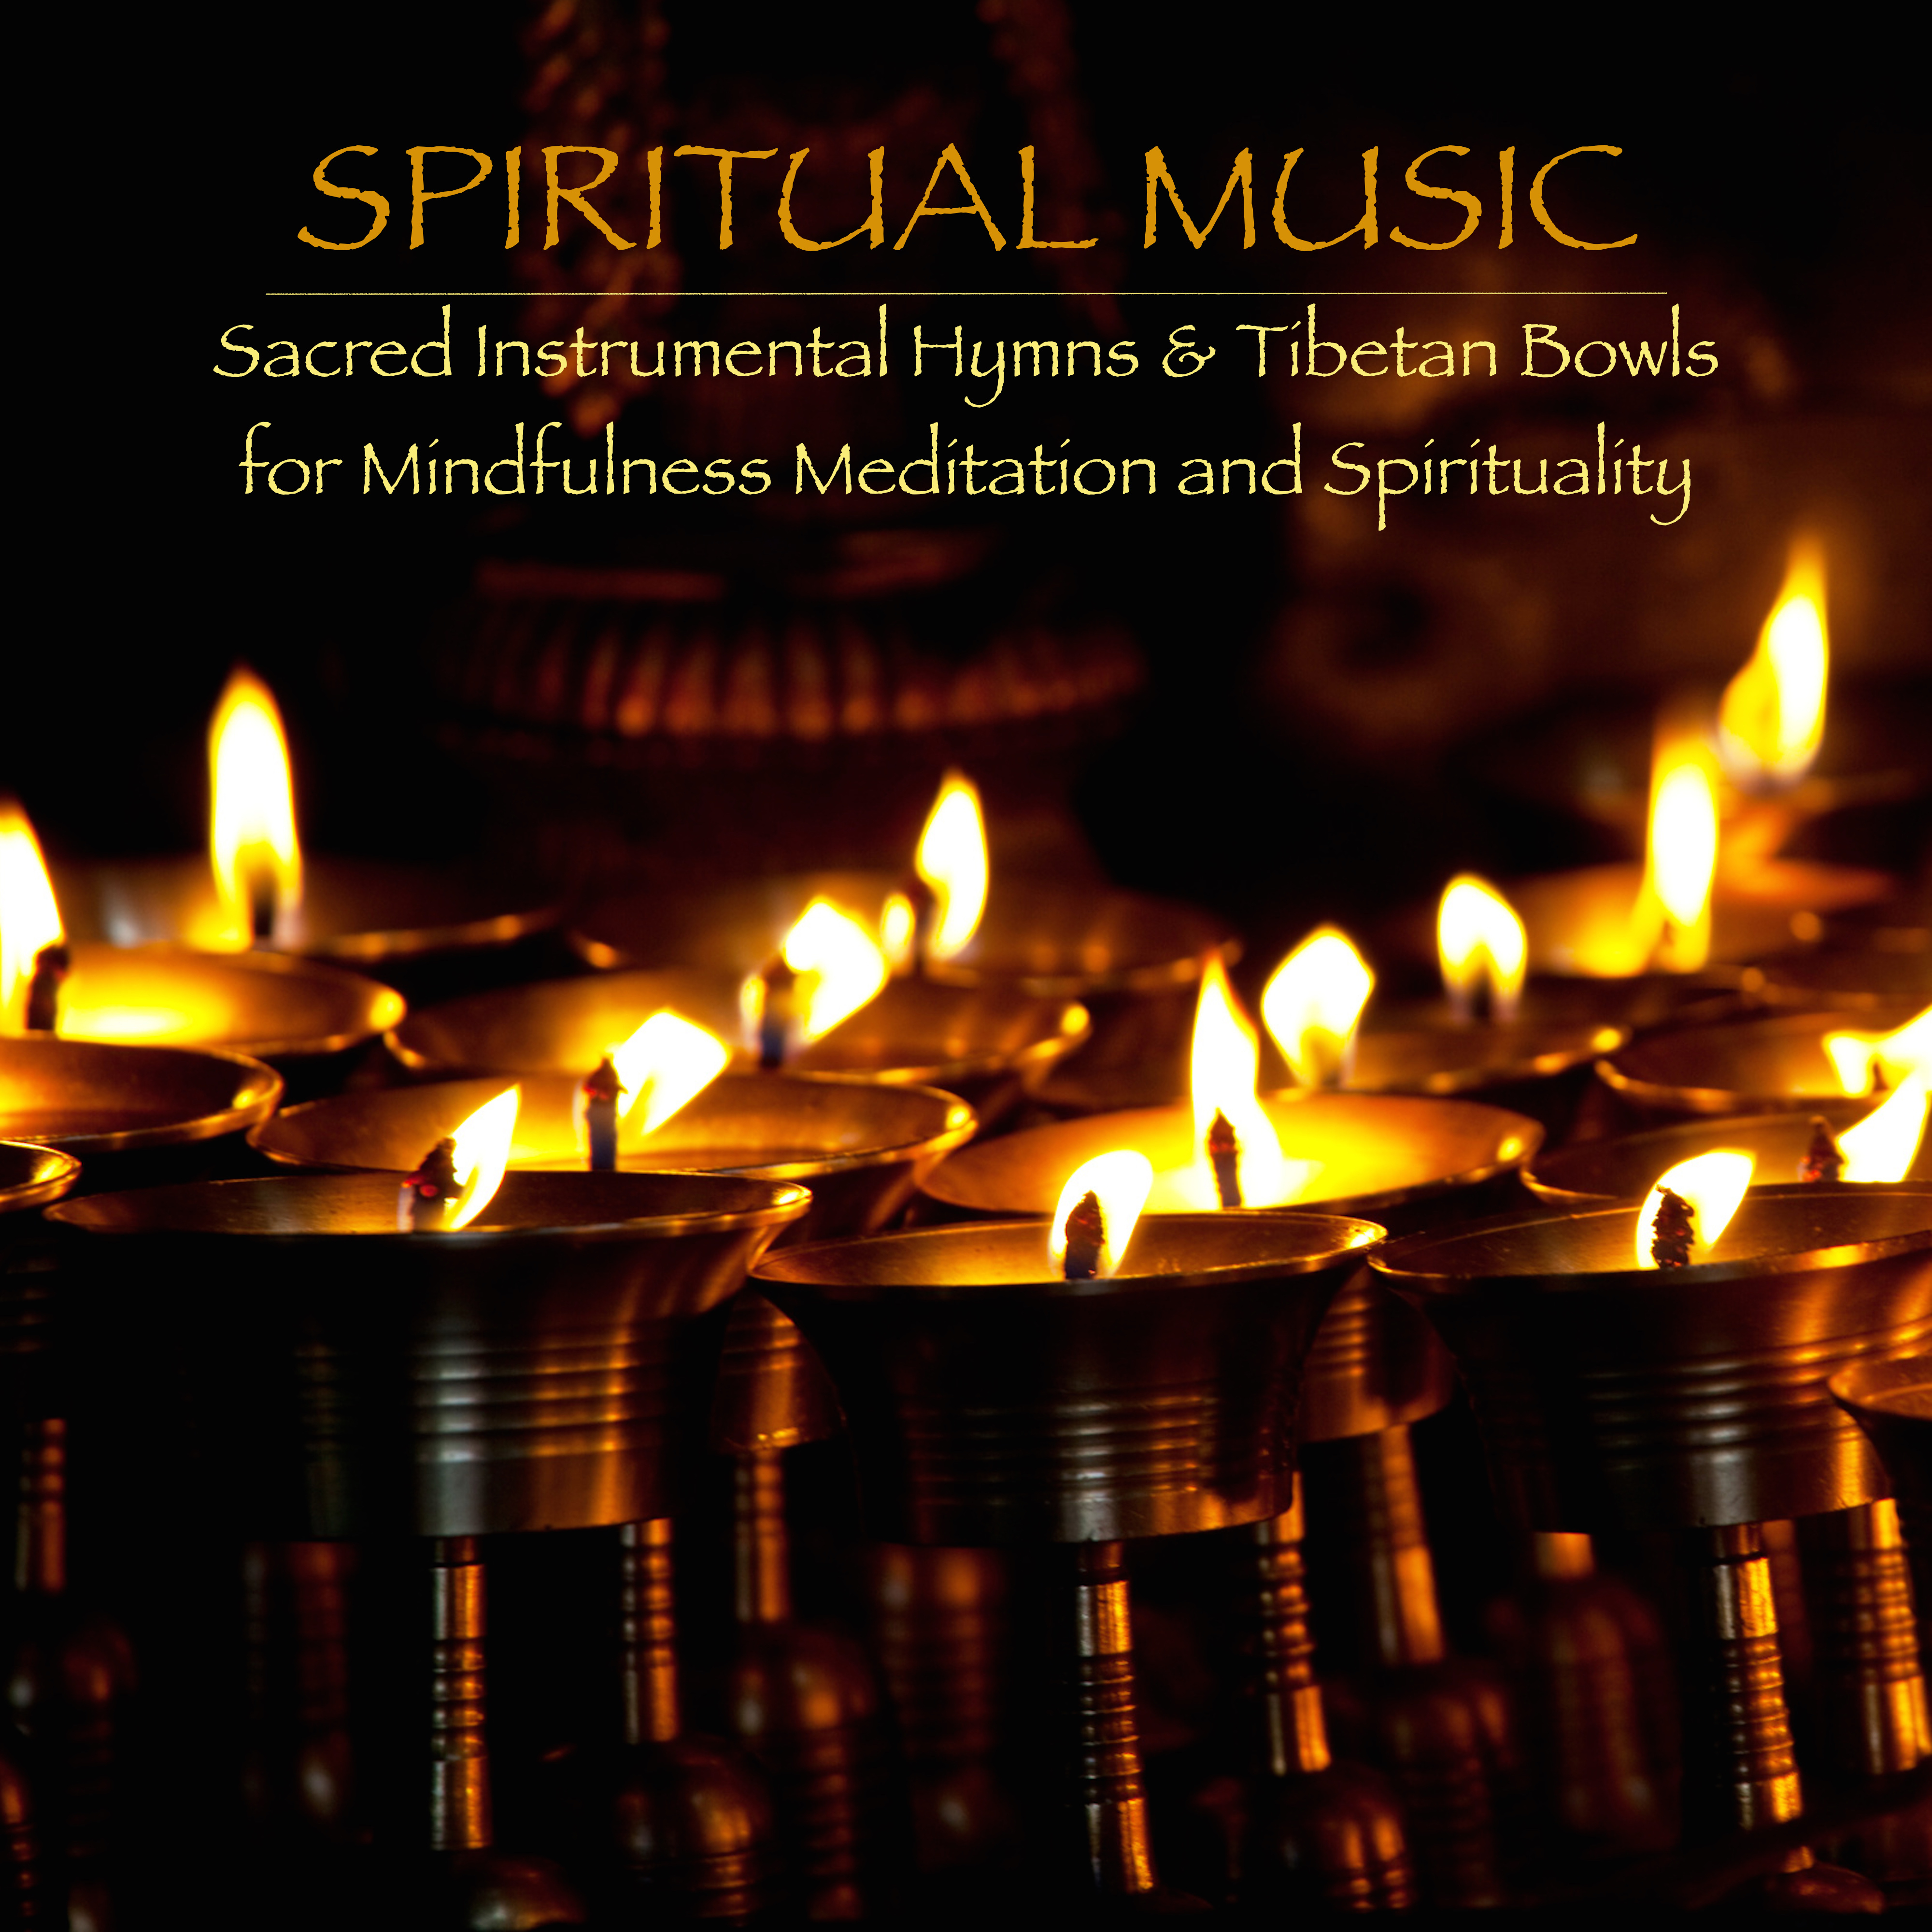 Spiritual Music, Sacred Instrumental Hymns & Tibetan Bowls for Mindfulness Meditation and Spirituality